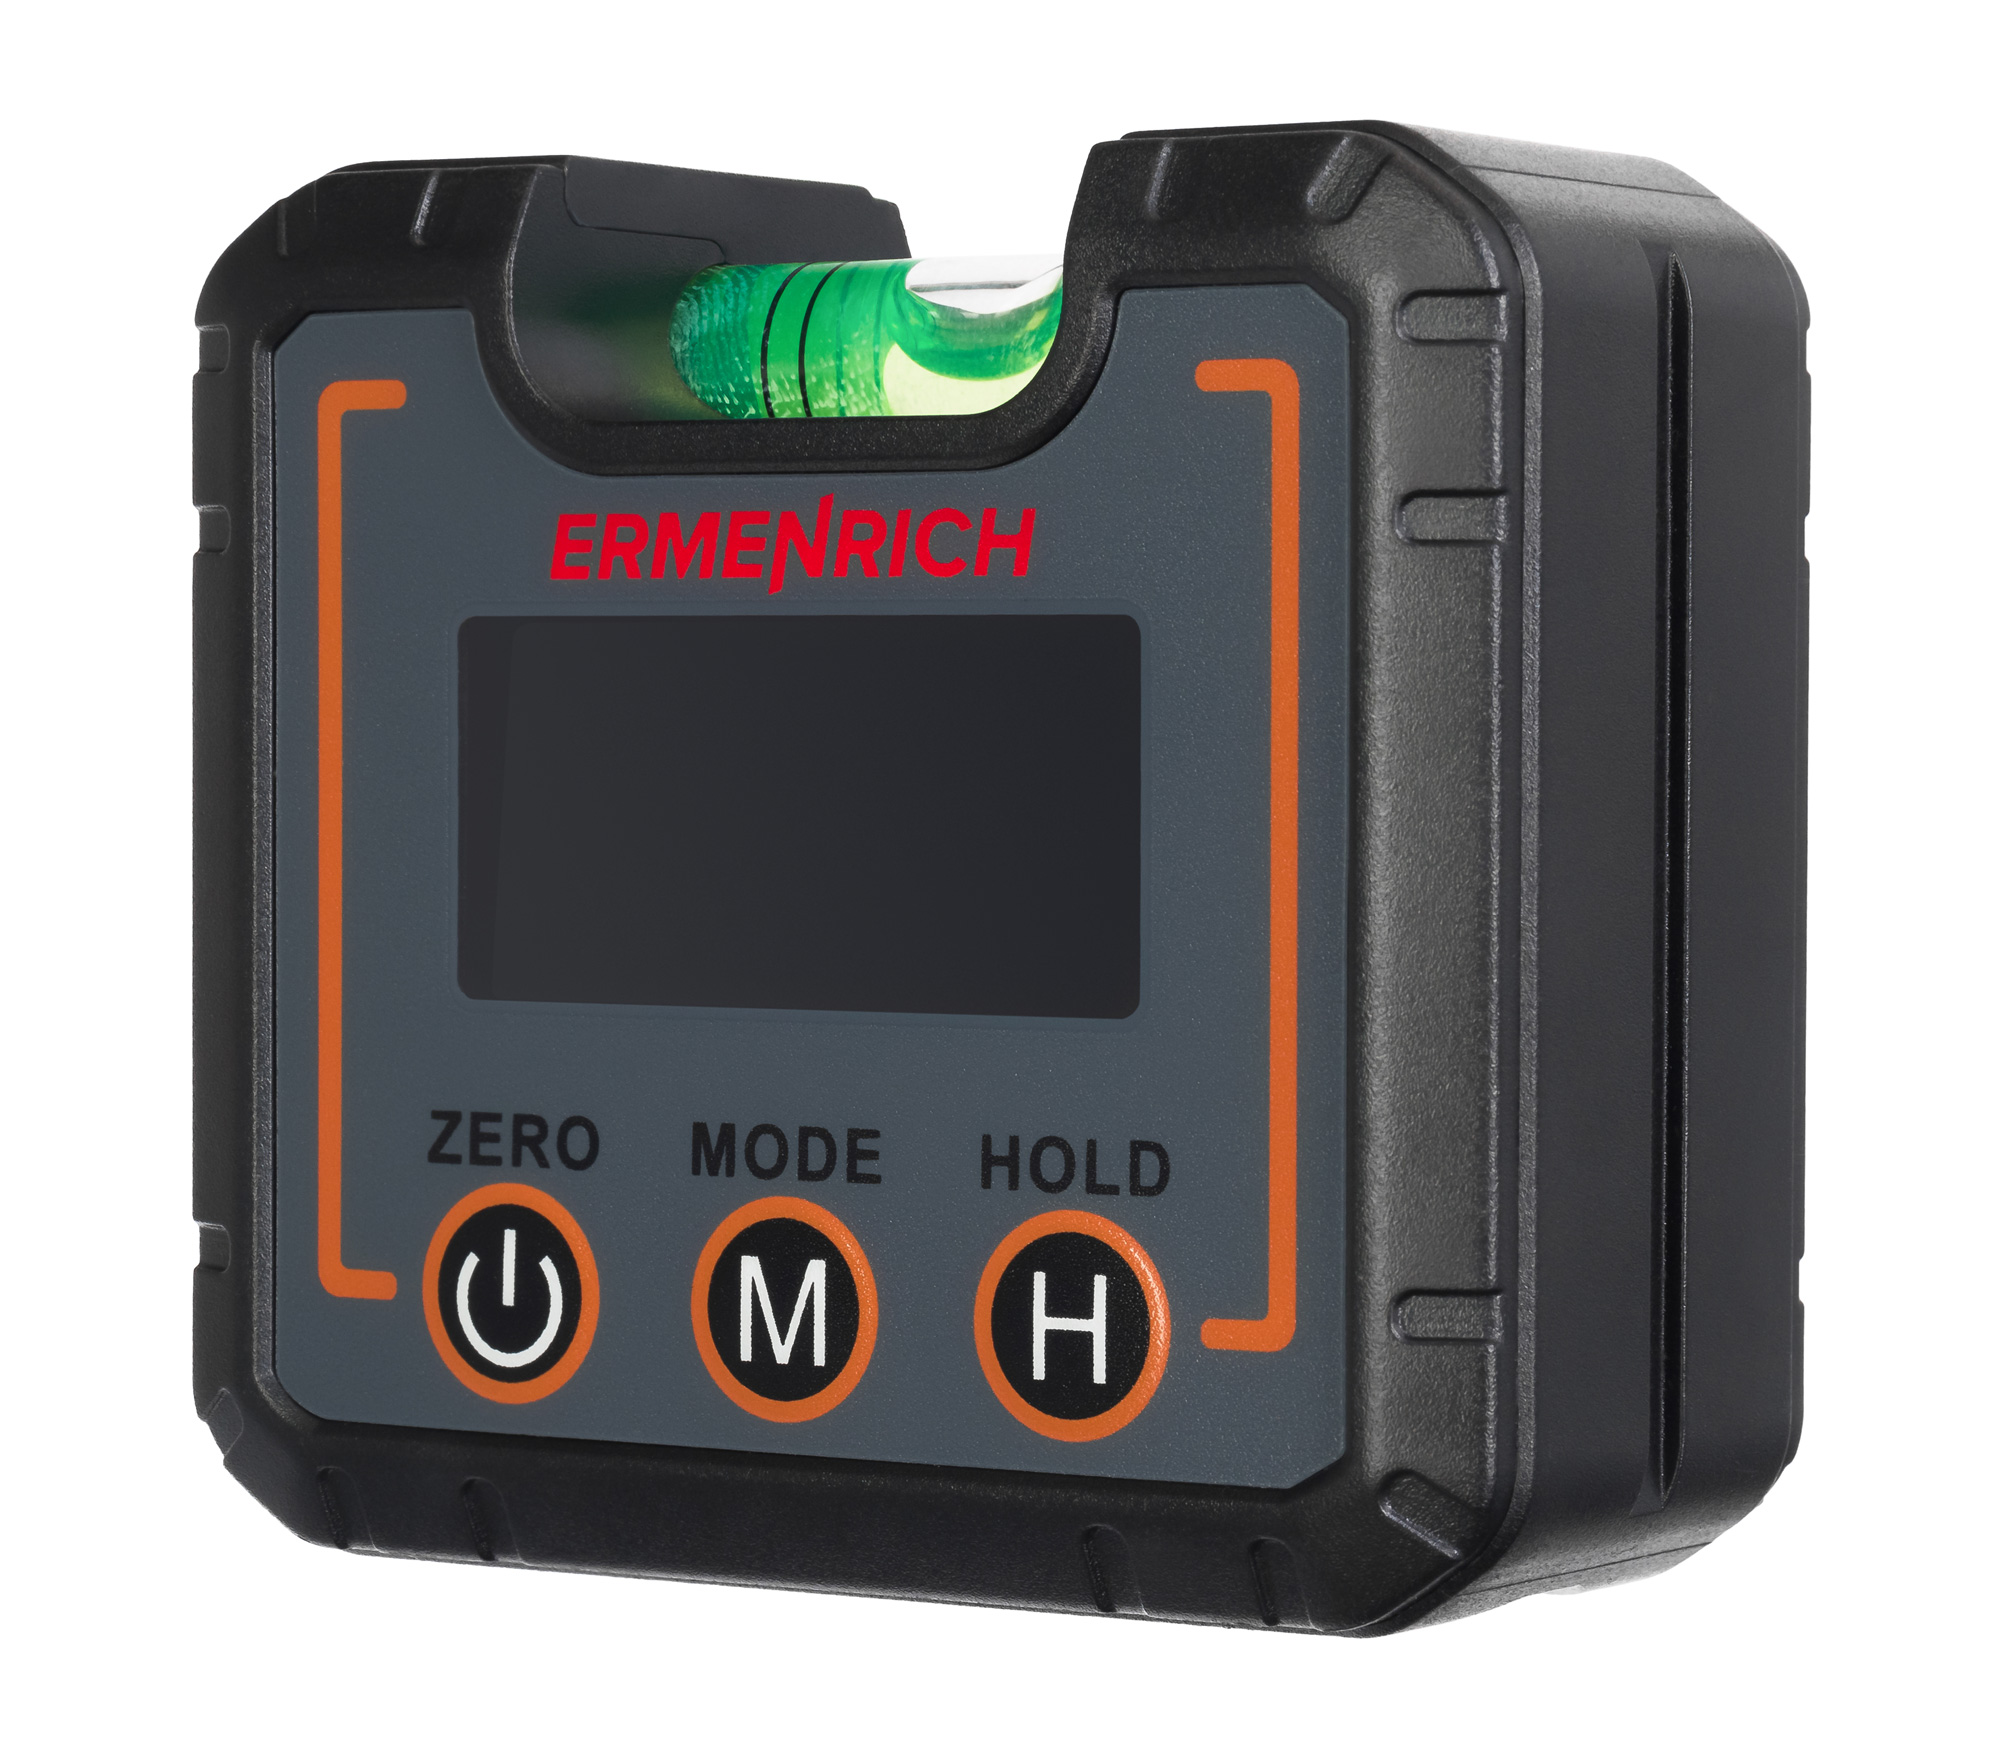 Цифровой уровень Ermenrich Verk LQ30 цифровой штангенциркуль bestseller измерительный инструмент электронный точность 0 1 мм